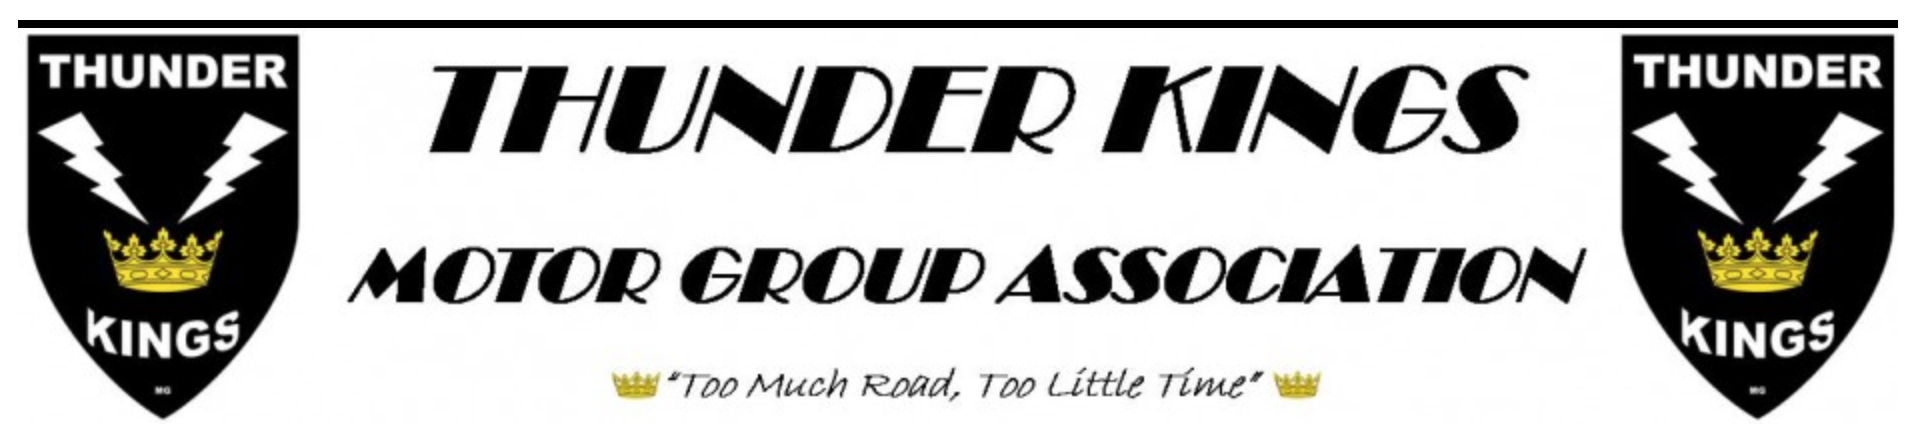 Thunder Kings Motor Group Association